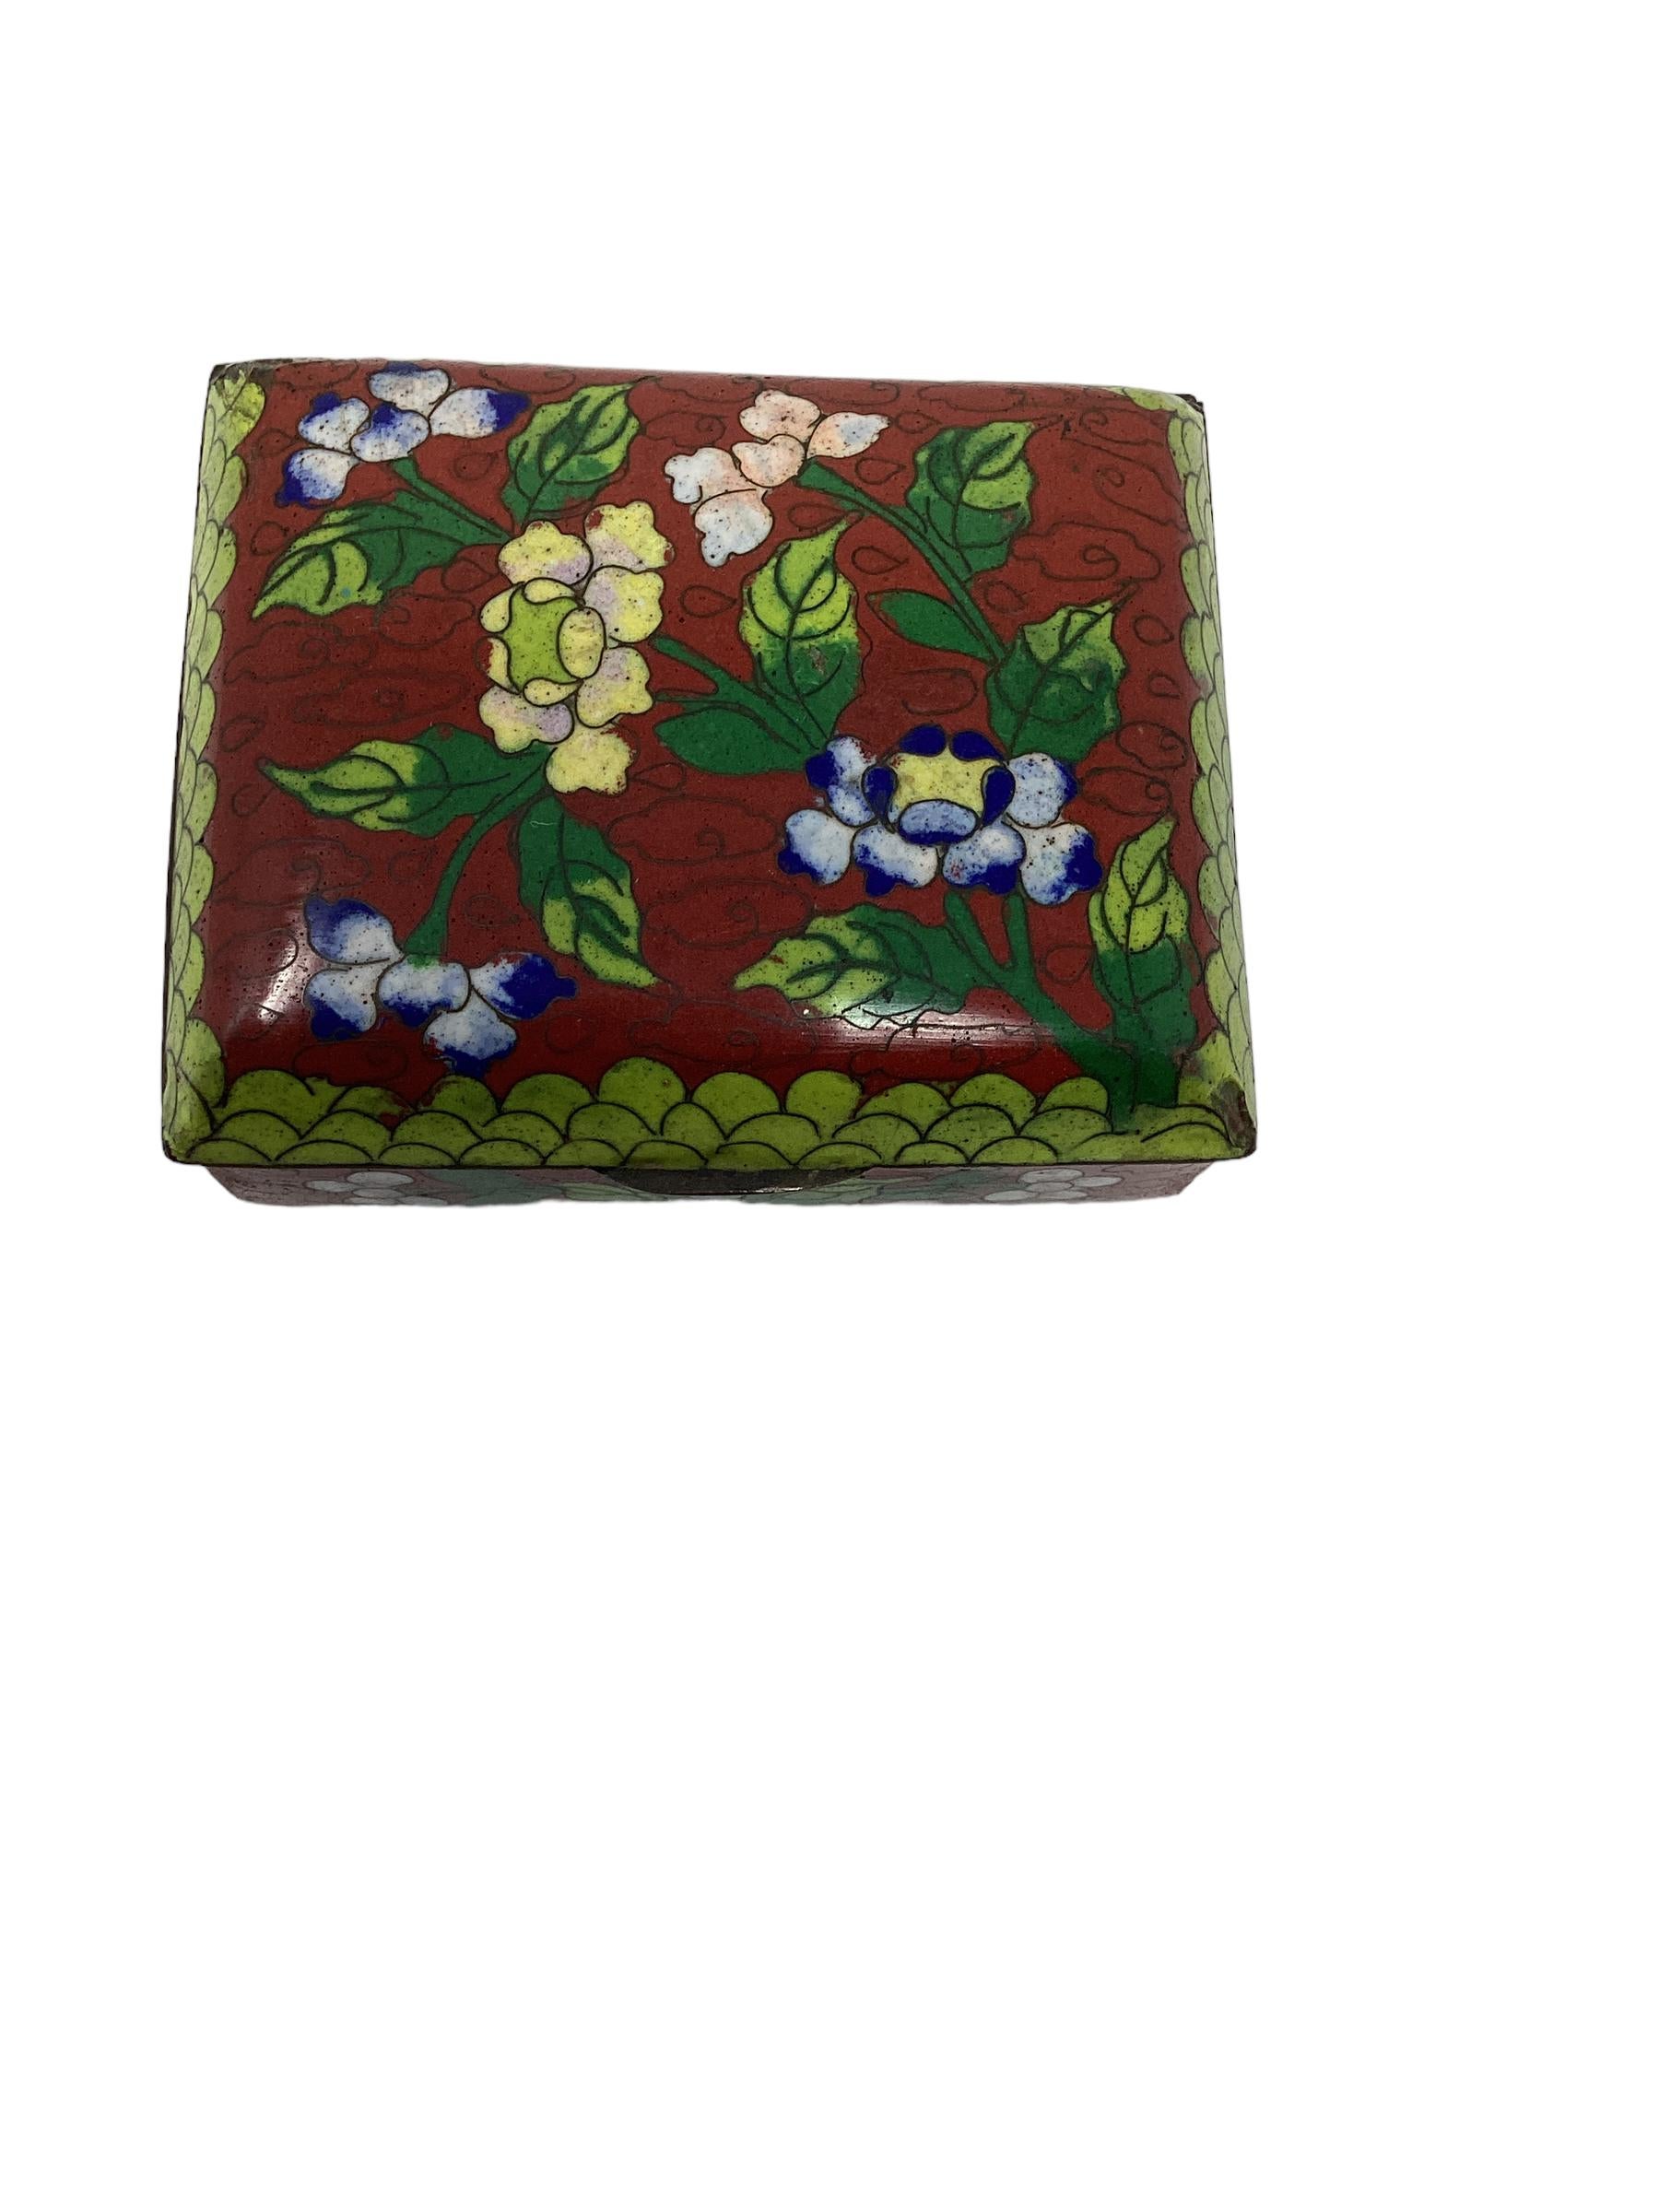 Ravissante boîte cloisonnée d'exportation chinoise en laiton et émaillée d'un magnifique motif floral dans de belles couleurs de rouge, vert, bleu et rouge. La boîte repose sur des pieds à billes. Cette boîte de chinoiserie est marquée china et date